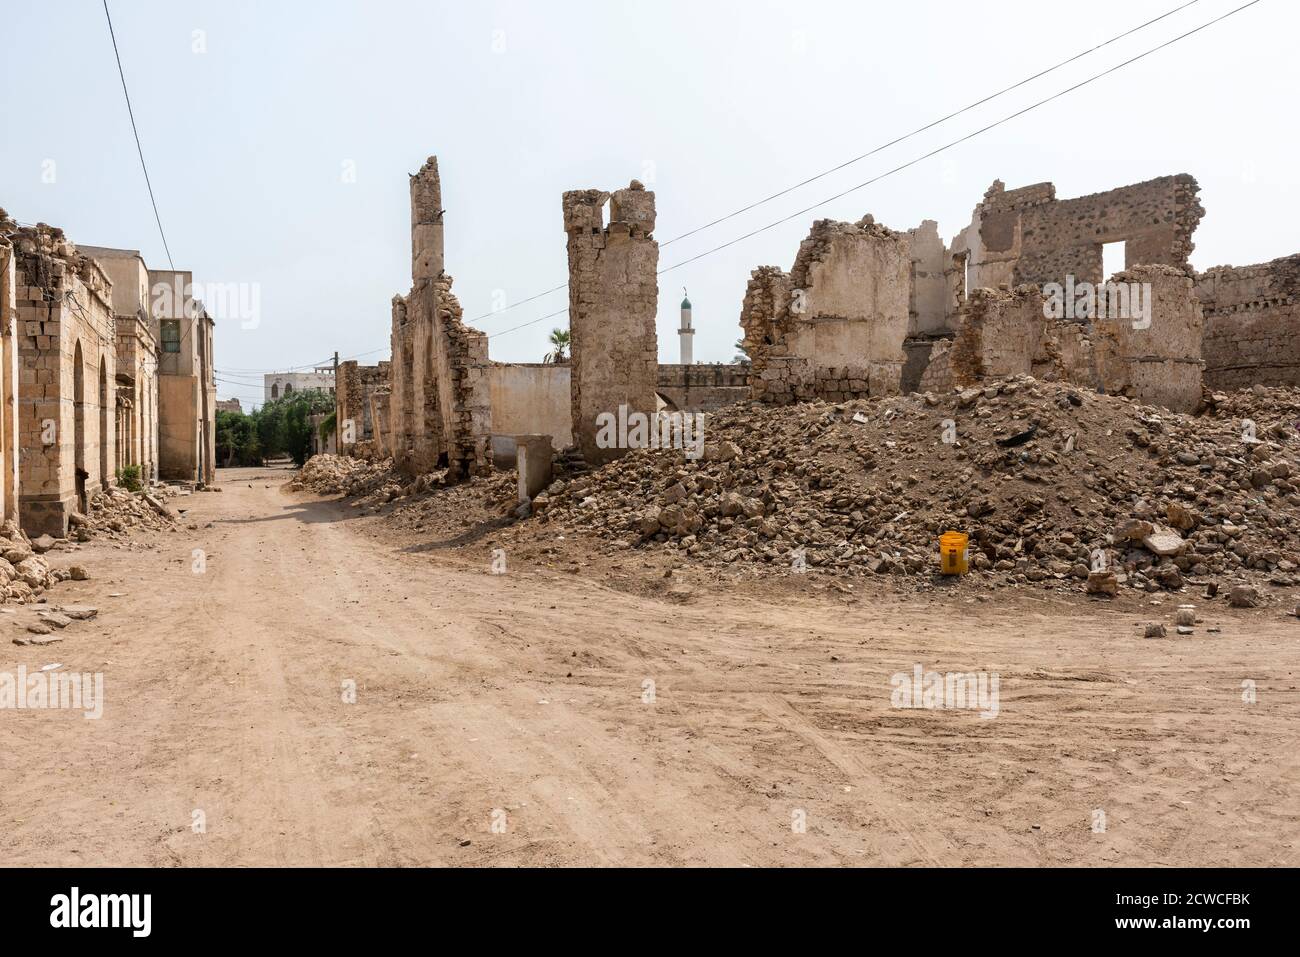 Bombardierte zerstörte Gebäude in einer typischen Straße in Massawa. Massawa - Stadtporträt, Massawa, Eritrea. Architekt: Verschiedene, 2019. Stockfoto